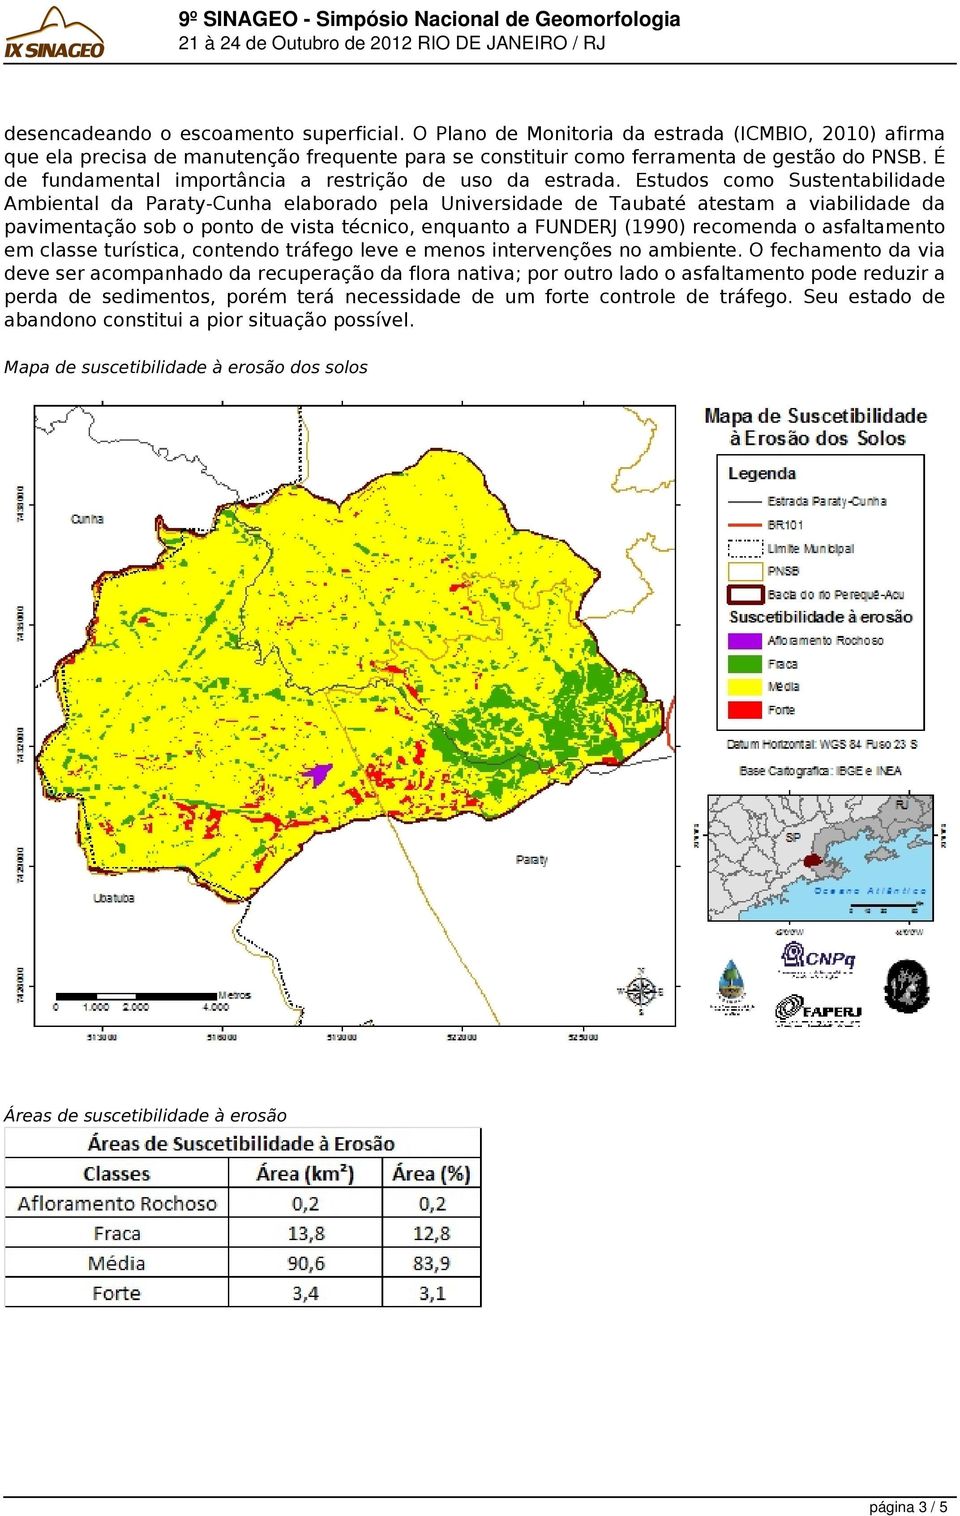 Estudos como Sustentabilidade Ambiental da Paraty-Cunha elaborado pela Universidade de Taubaté atestam a viabilidade da pavimentação sob o ponto de vista técnico, enquanto a FUNDERJ (1990) recomenda